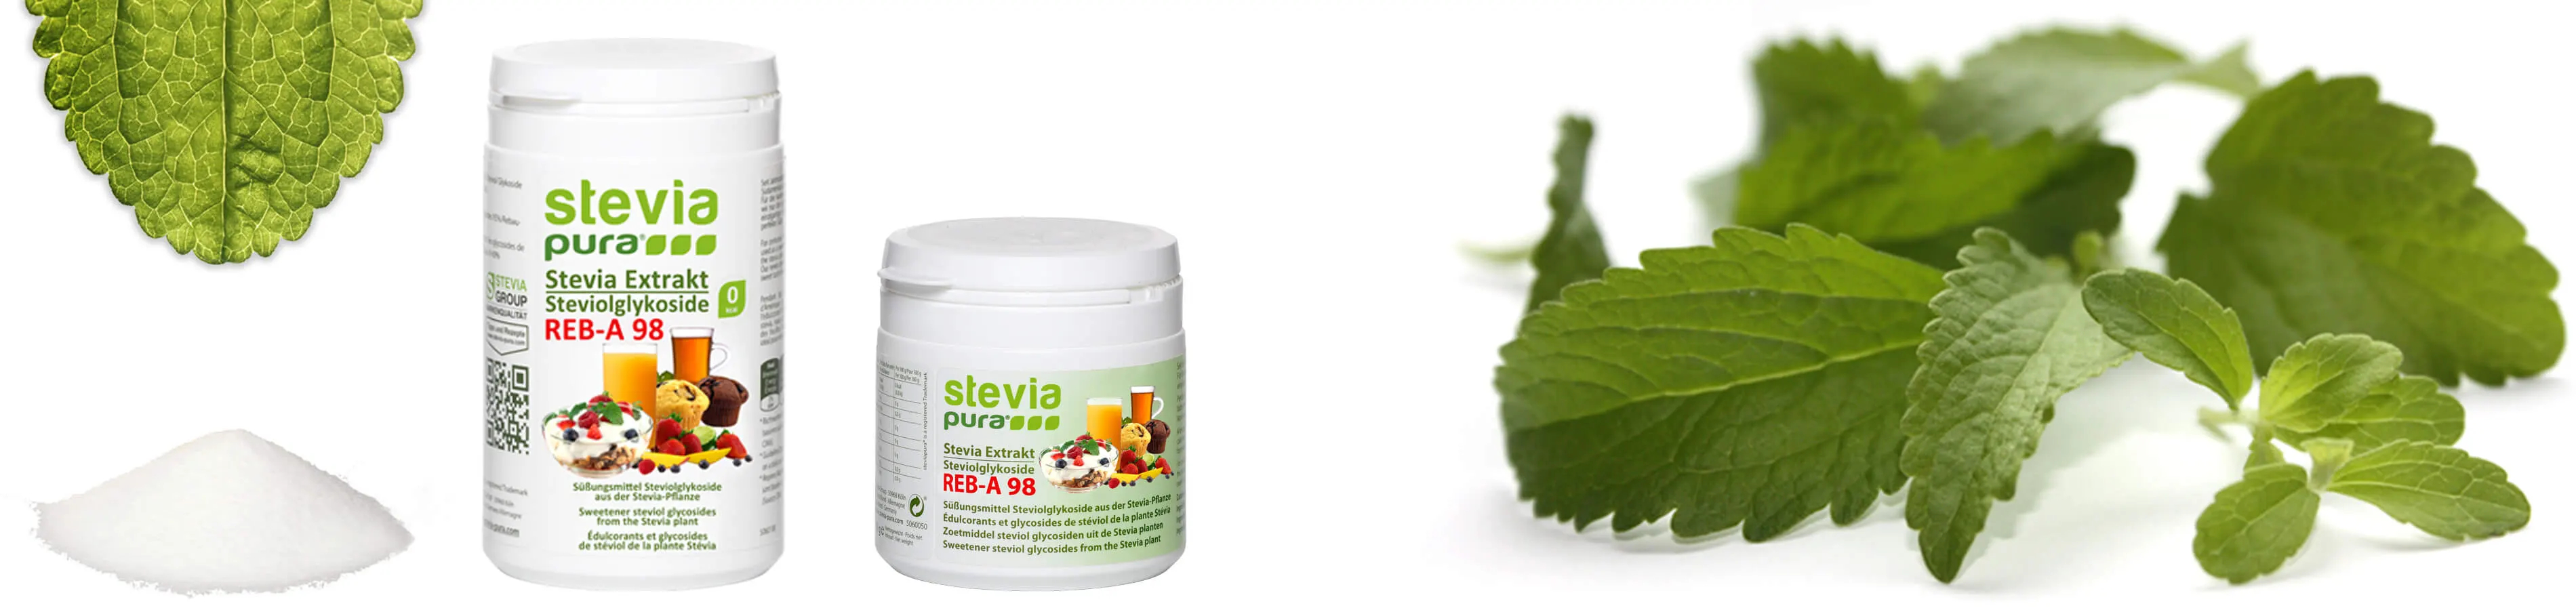 Steviolglycoside sind die süßen Inhaltstoffe der Stevia Pflanze. Reines pures Stevia Pulver wird als Zuckerersatz oder Süßungsmittel verwendet.